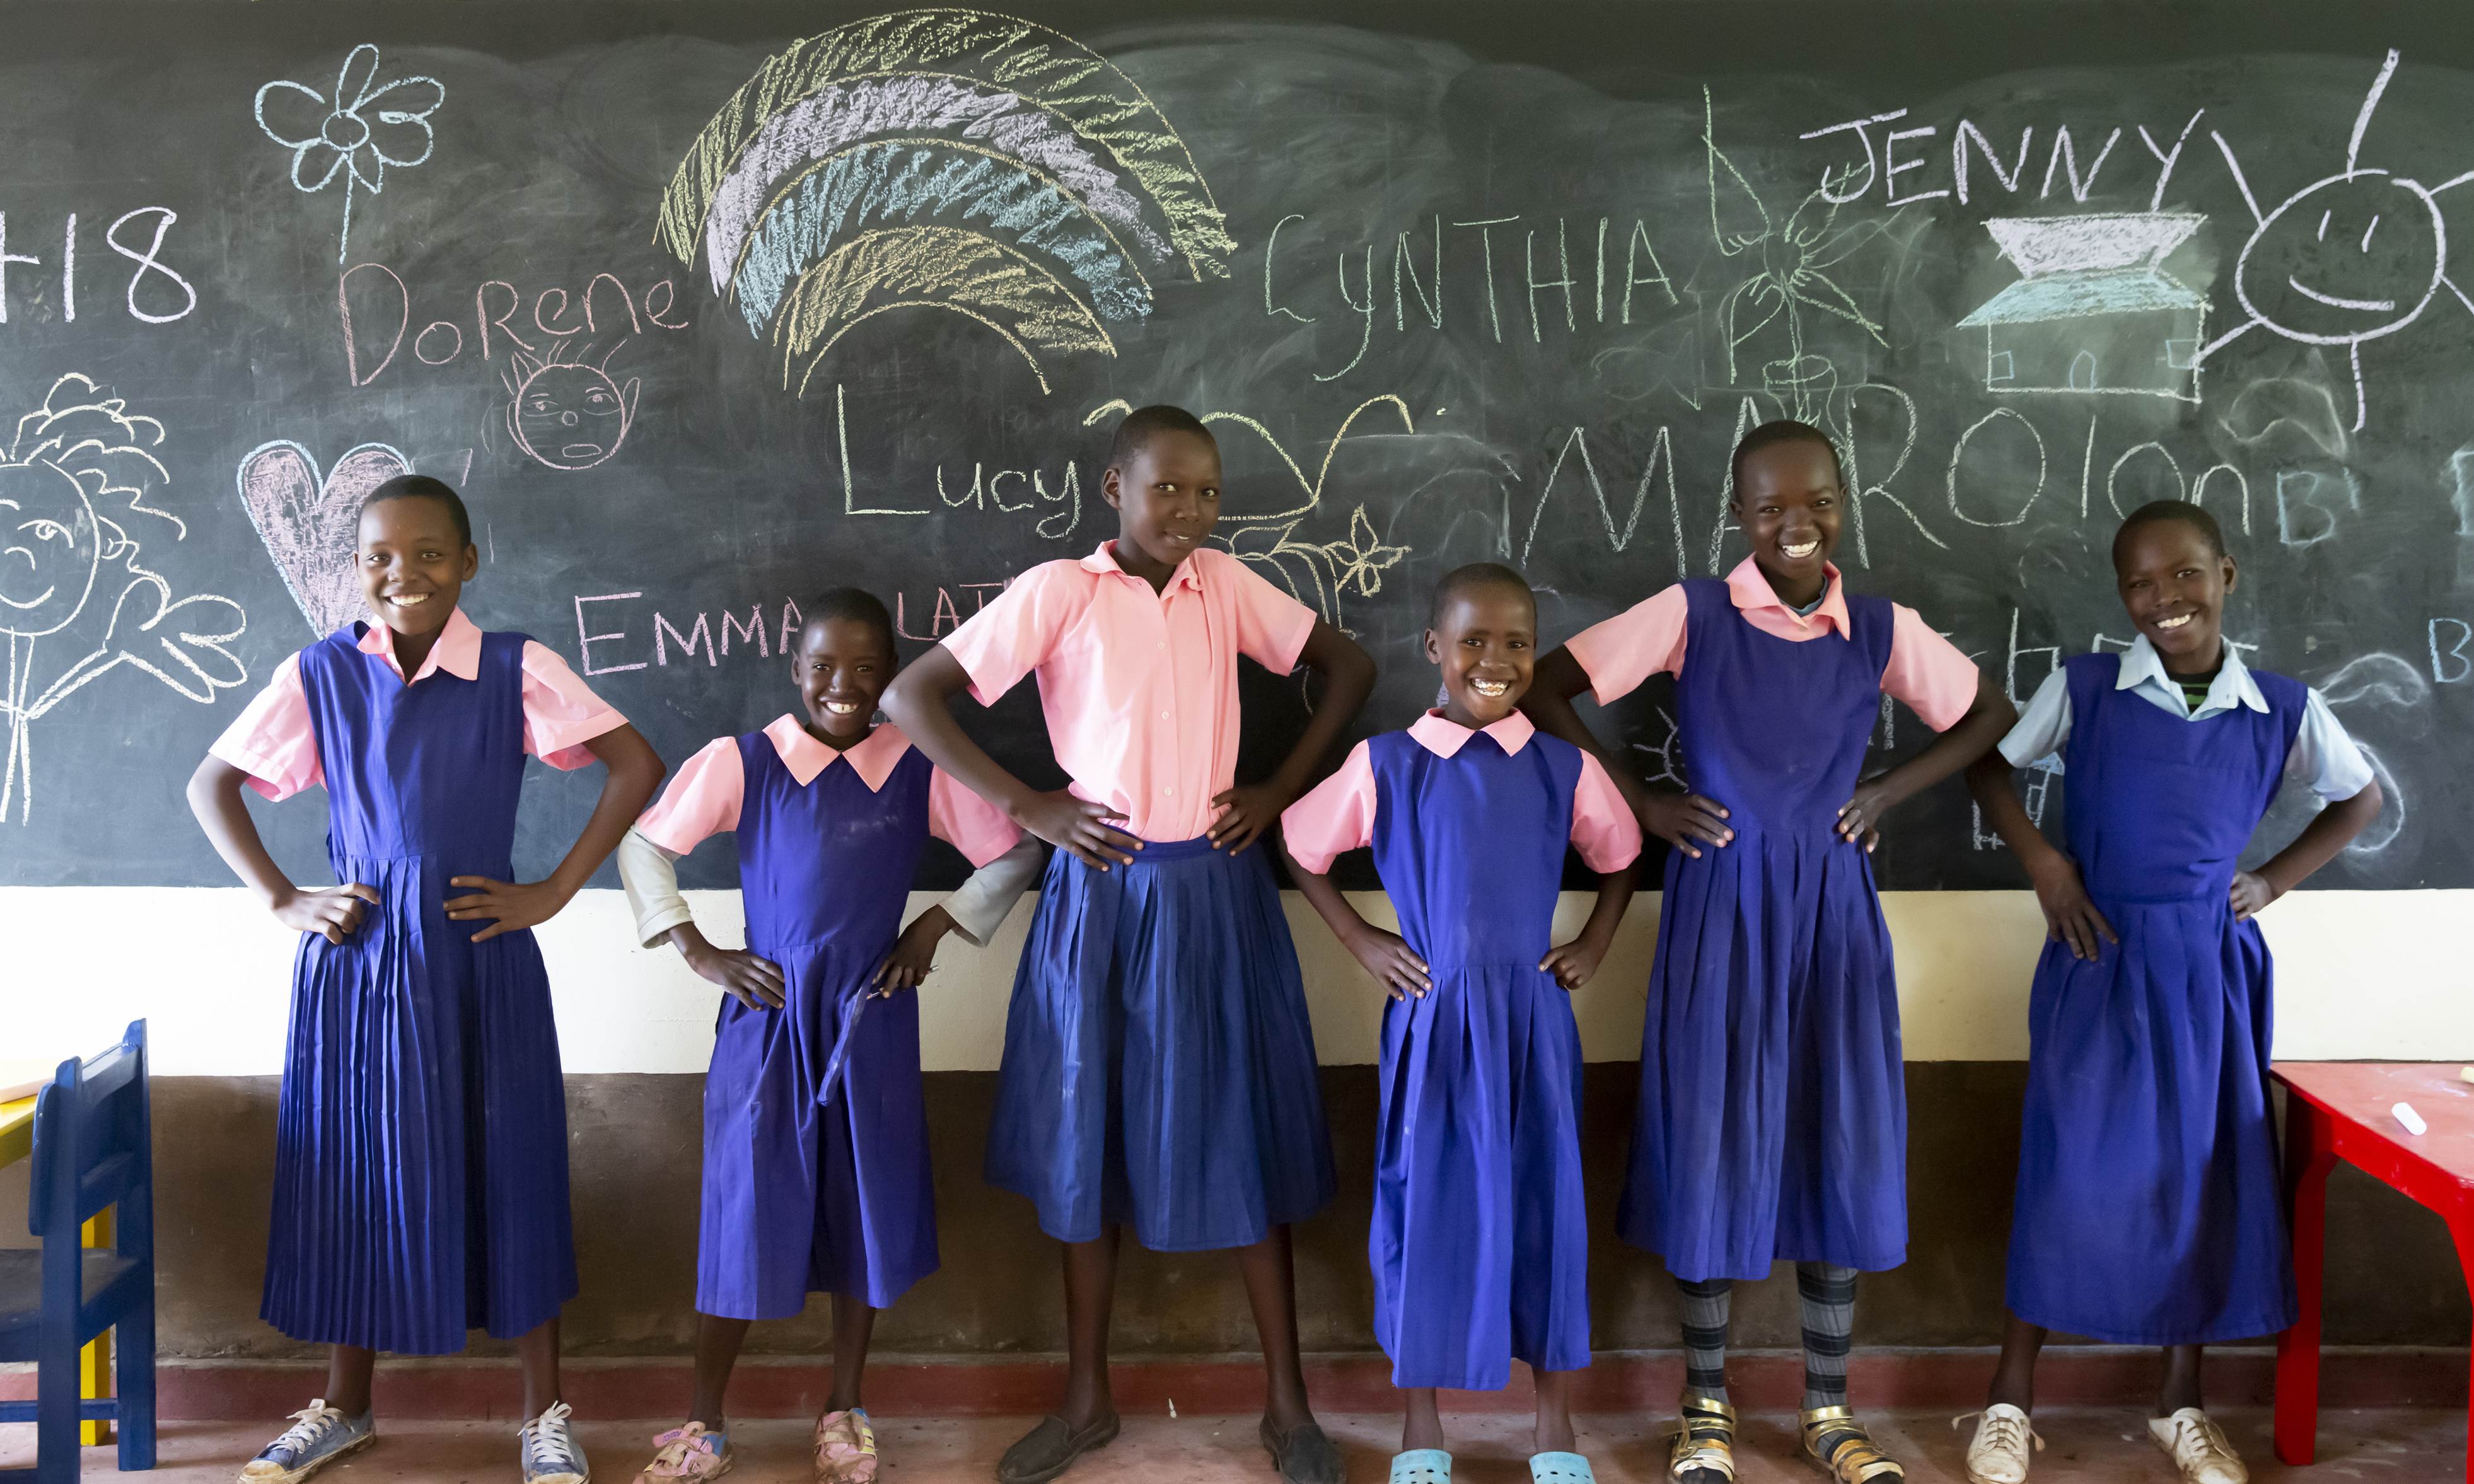 Un grupo de niñas todas vestidas con su uniforme escolar enfrente de una pizarra